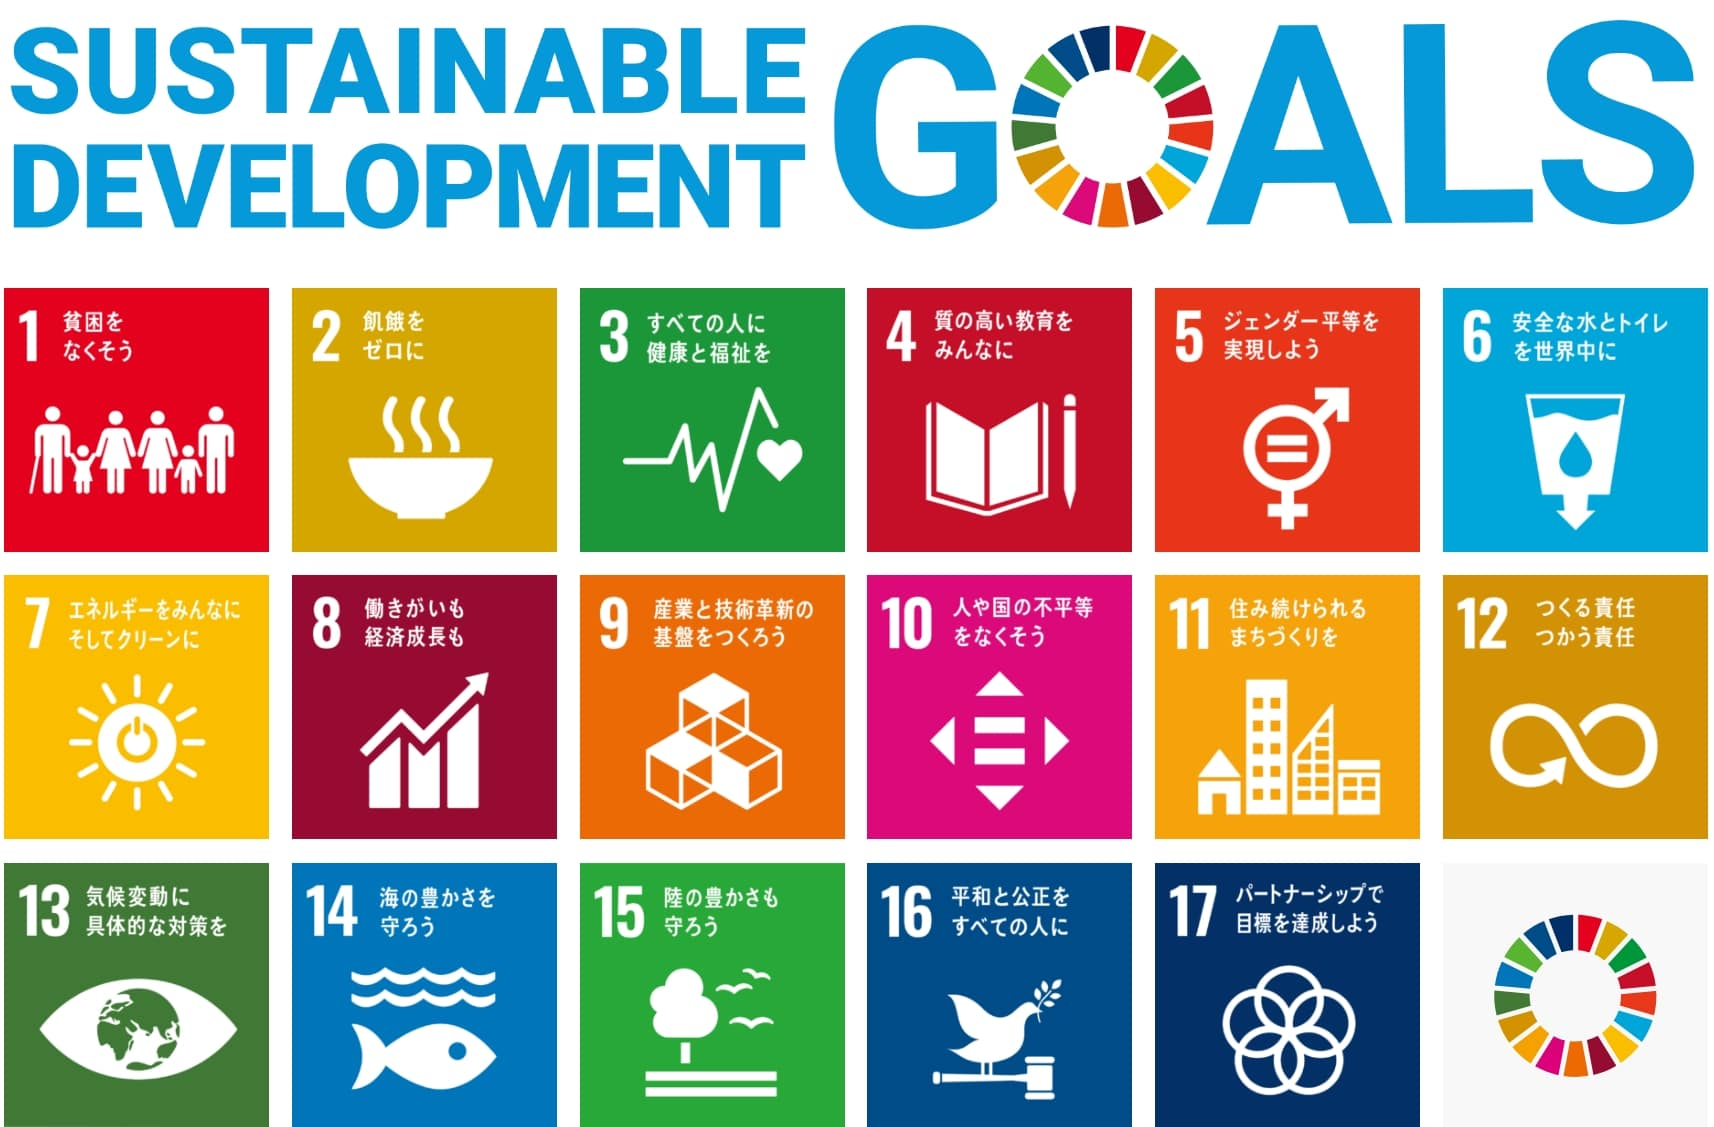 SDGsのブランドビジュアル、17のゴールが並んでいるイラスト